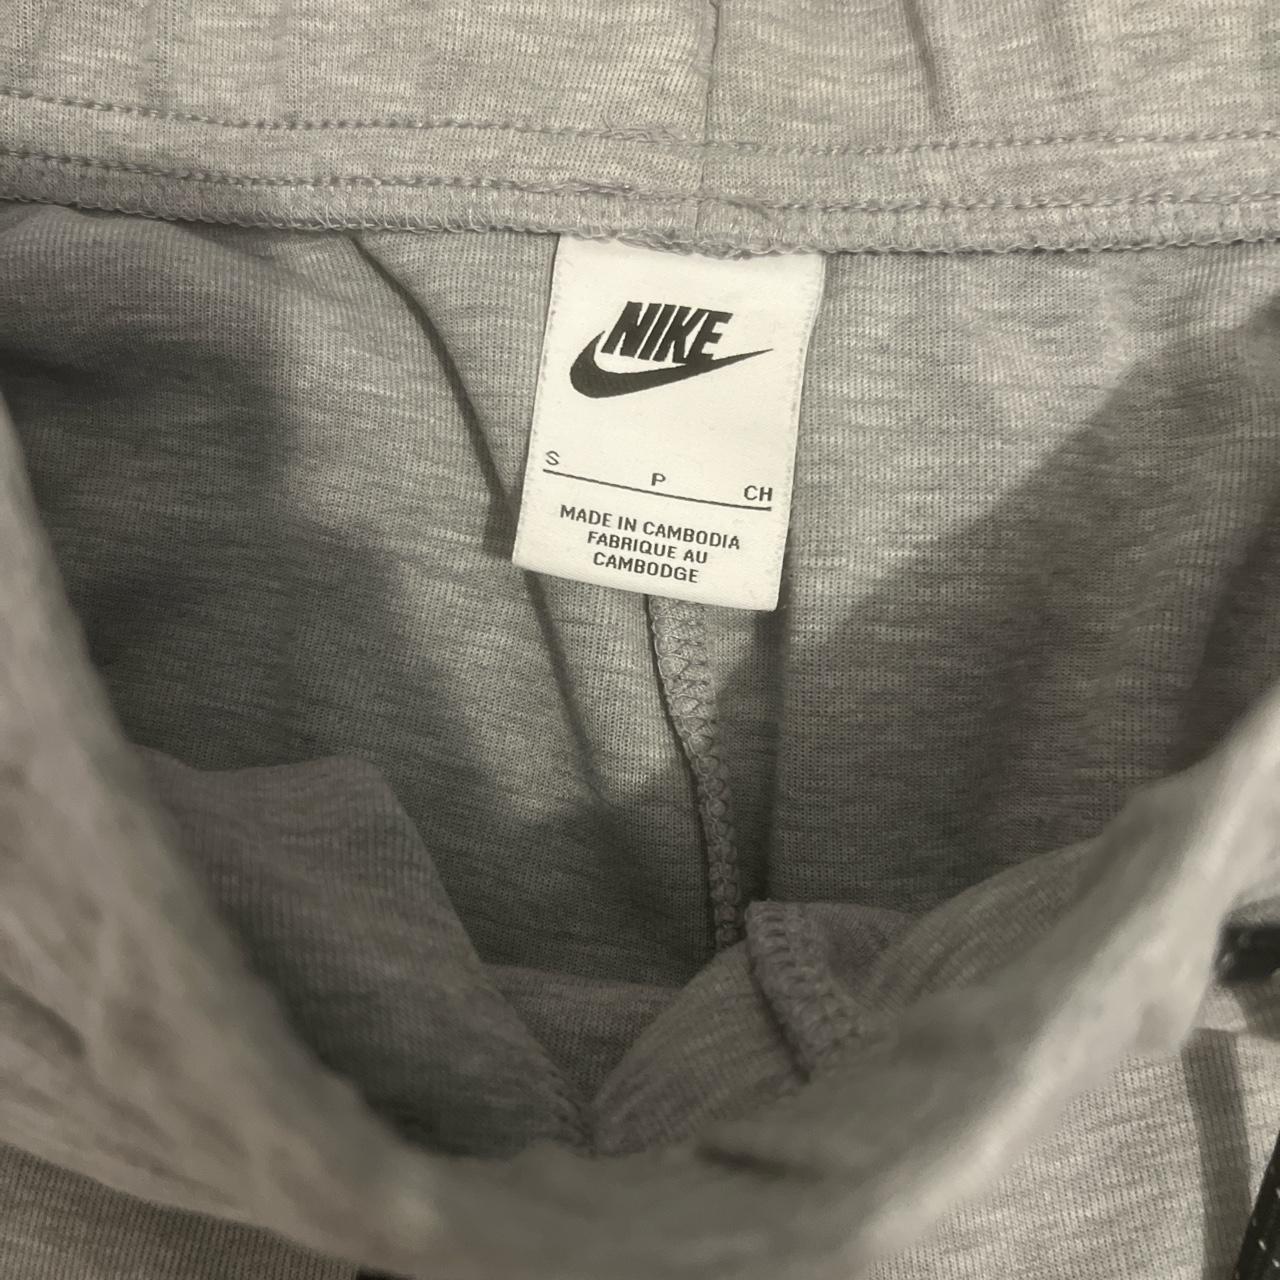 Nike tech fleece Hasn’t got a zip Has bleach on... - Depop